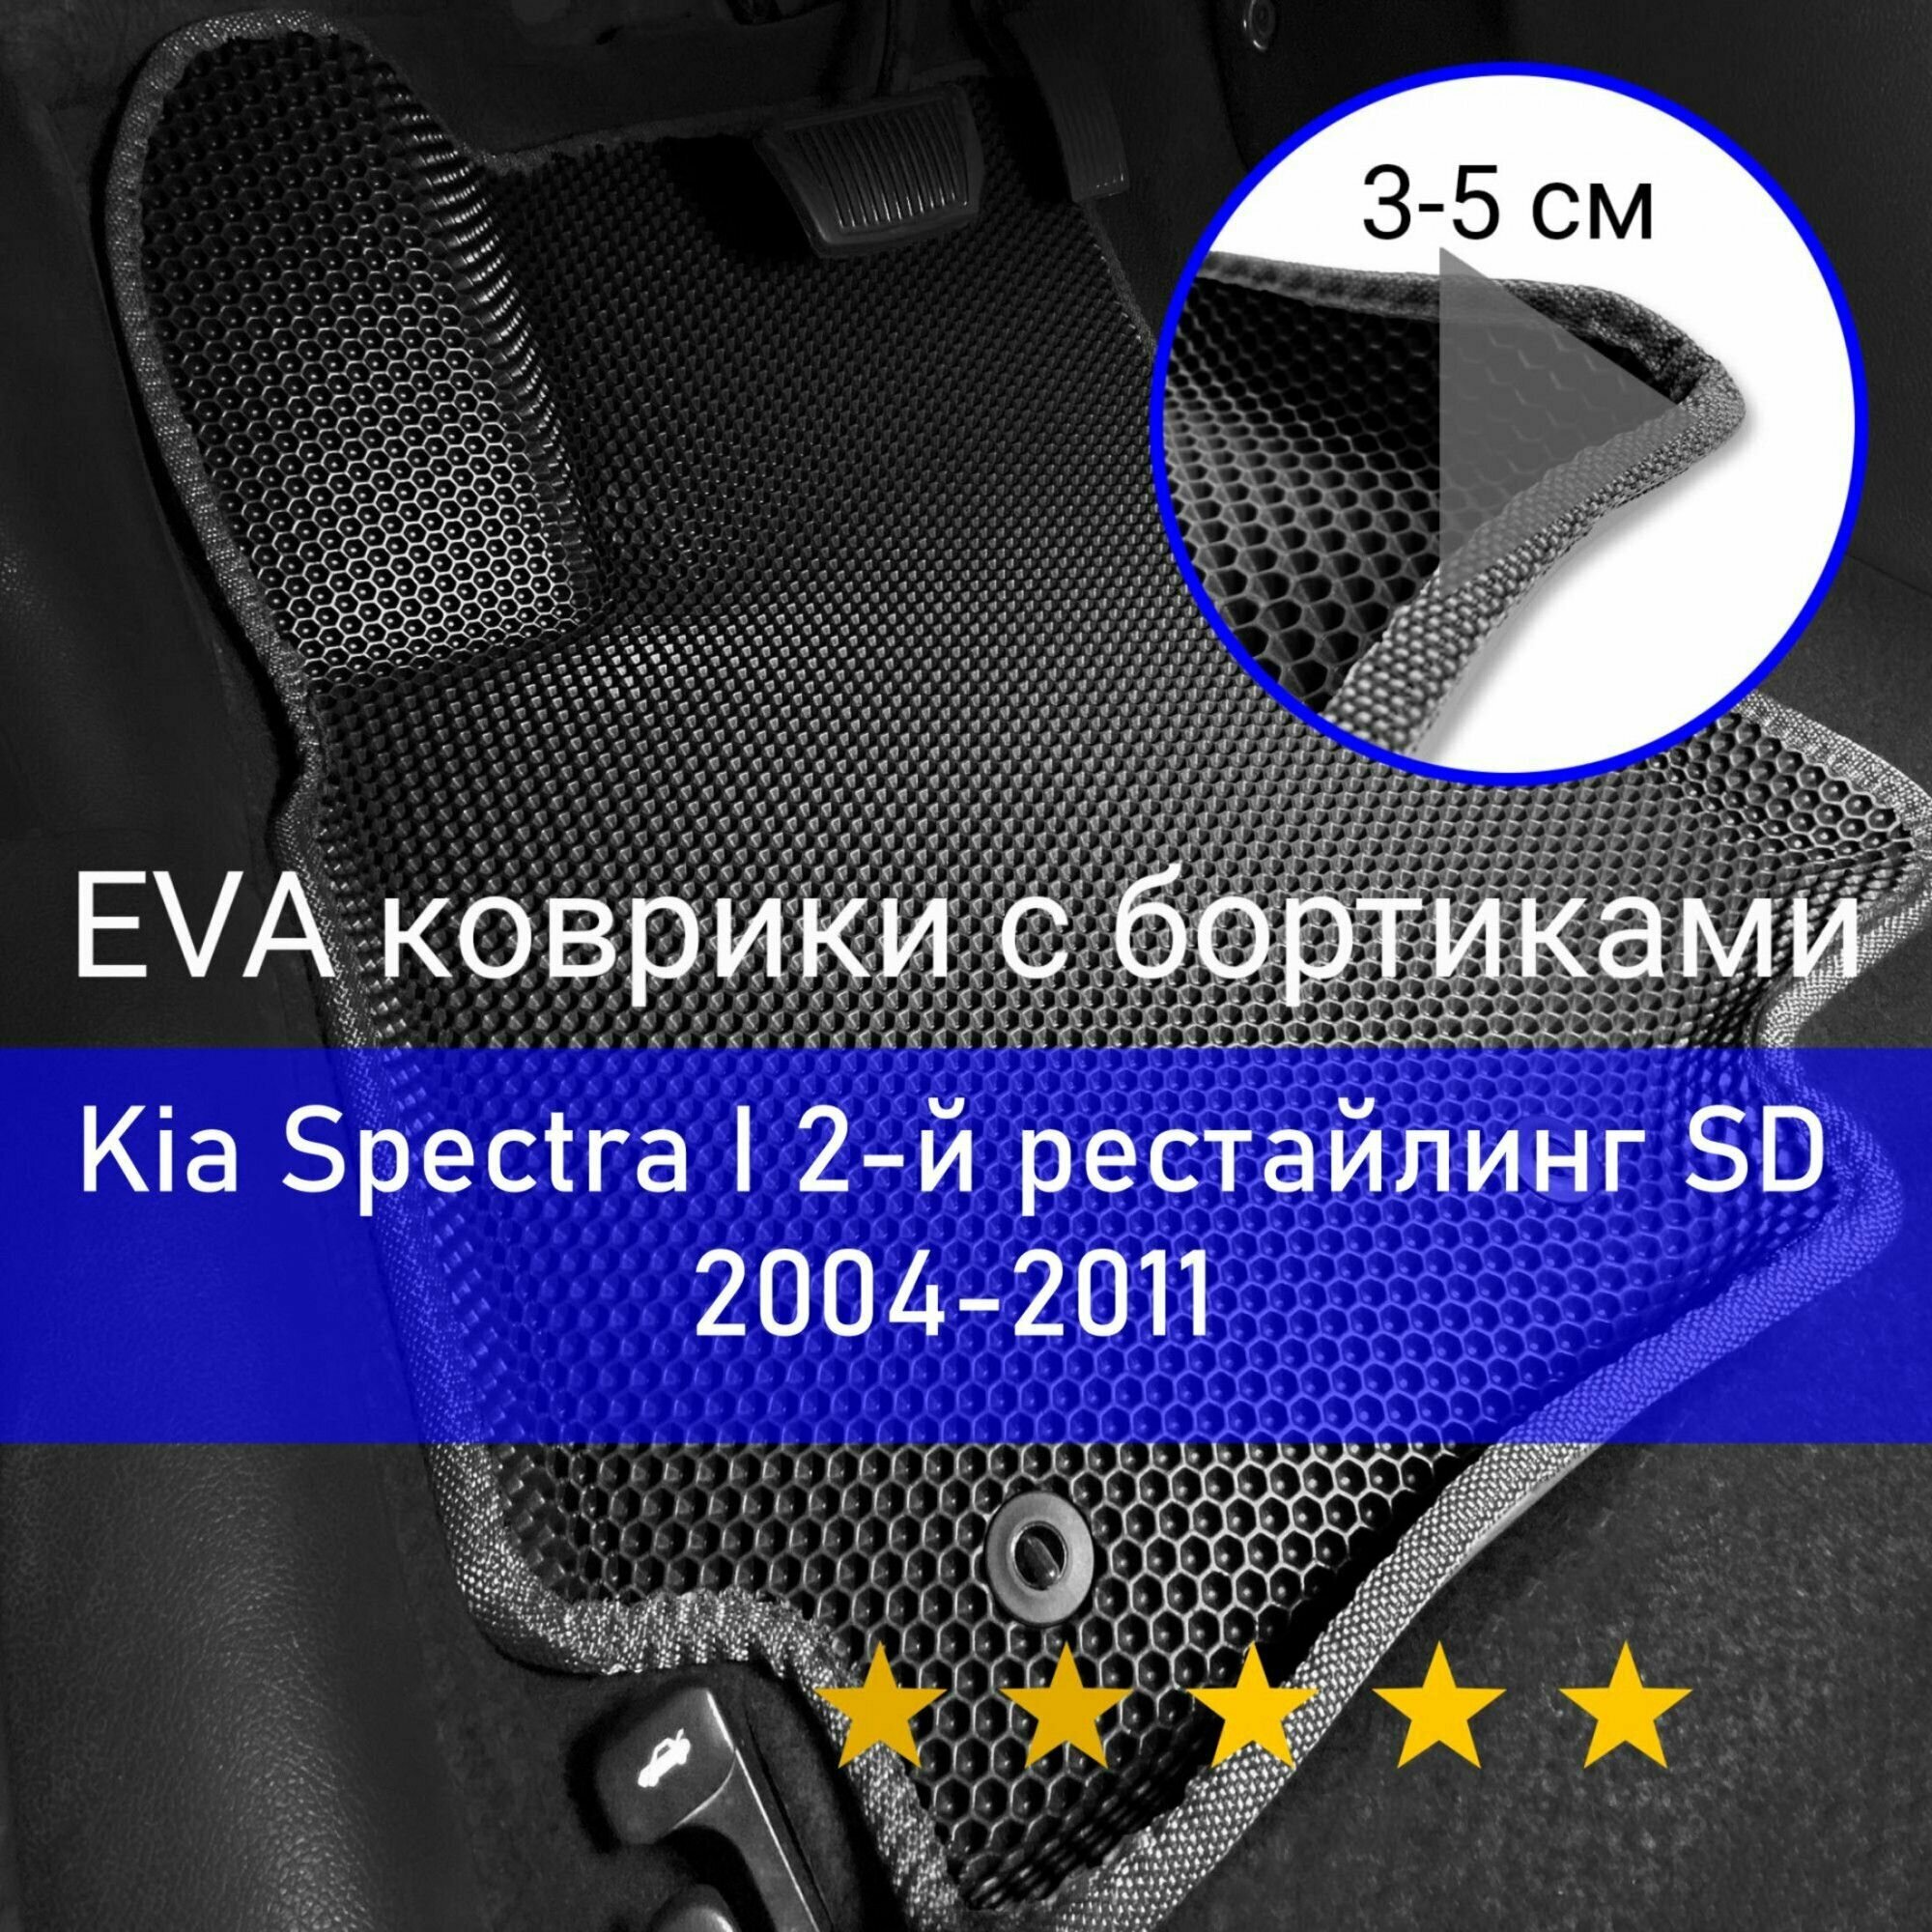 3Д коврики ЕВА (EVA, ЭВА) с бортиками на Kia Spectra 1 2-й рестайлинг SD 2004-2011 Киа Спектра Левый руль Соты Черный с серой окантовкой